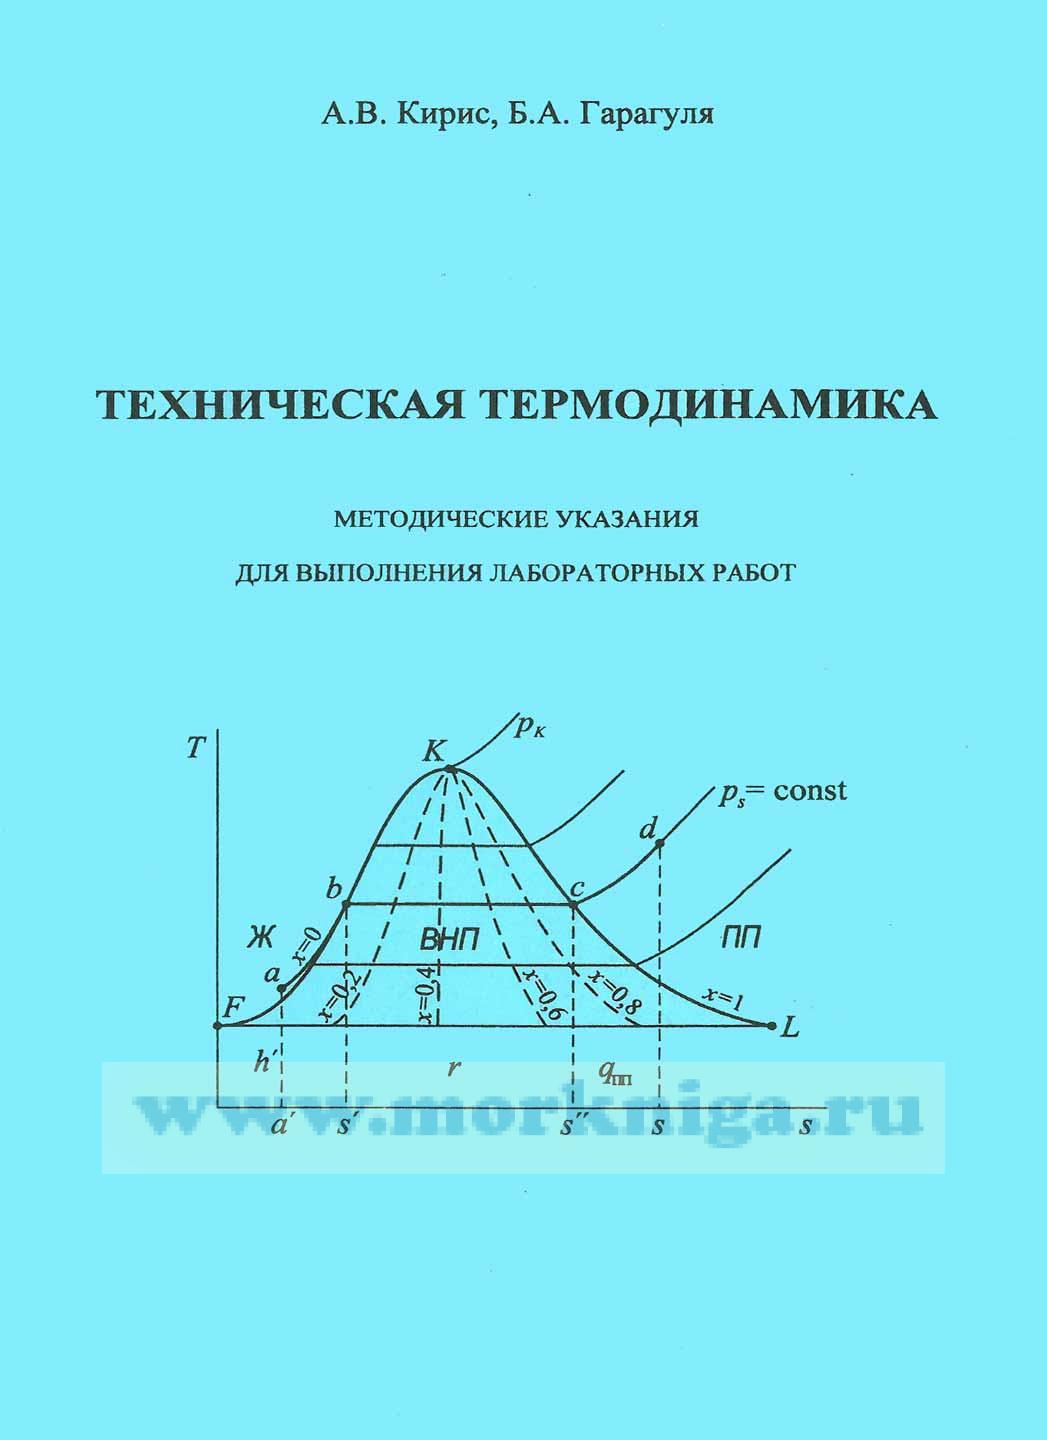 Техническая термодинамика: методические указания для выполнения лабораторных работ